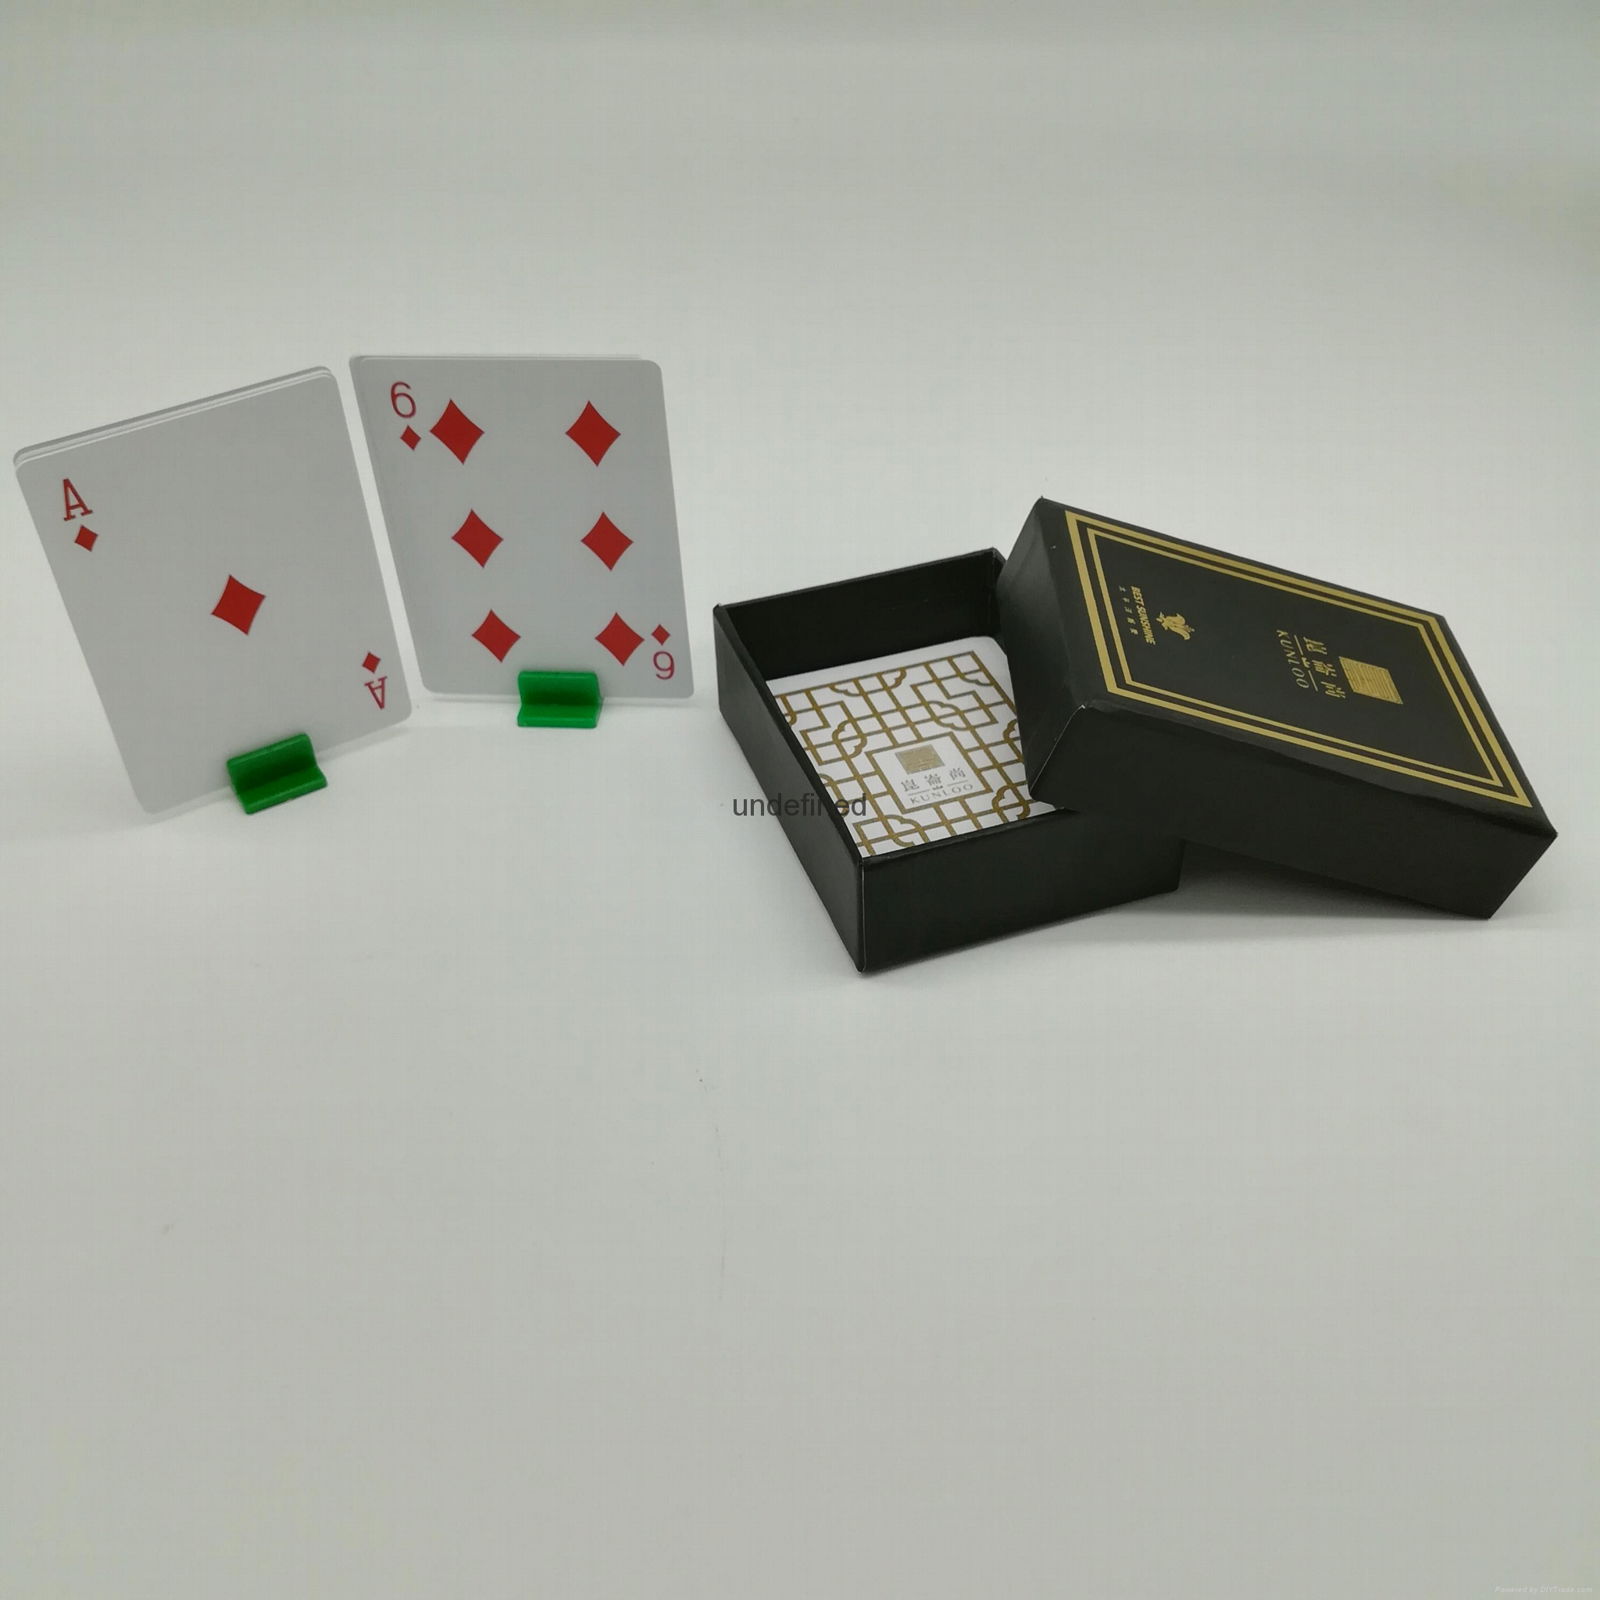 3毫米厚的中国供应商线上生产定制卡牌塑料扑克牌 2